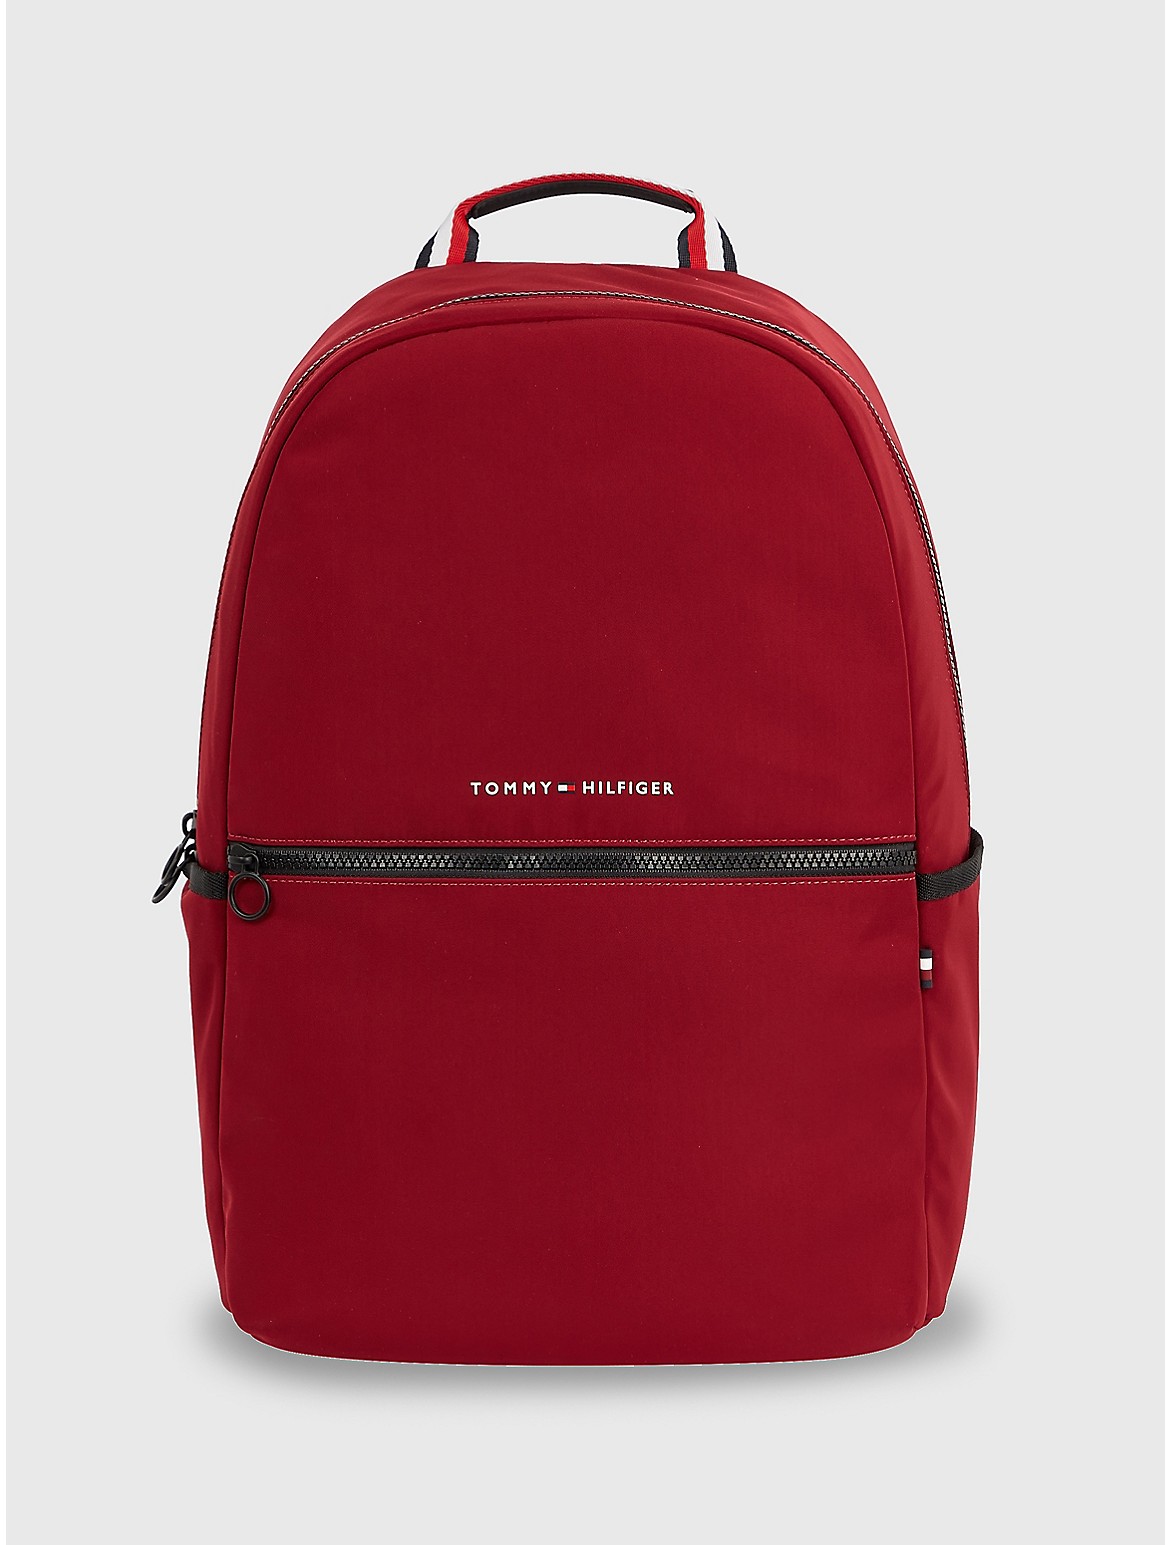 Tommy Hilfiger Men's Utility Backpack - Red